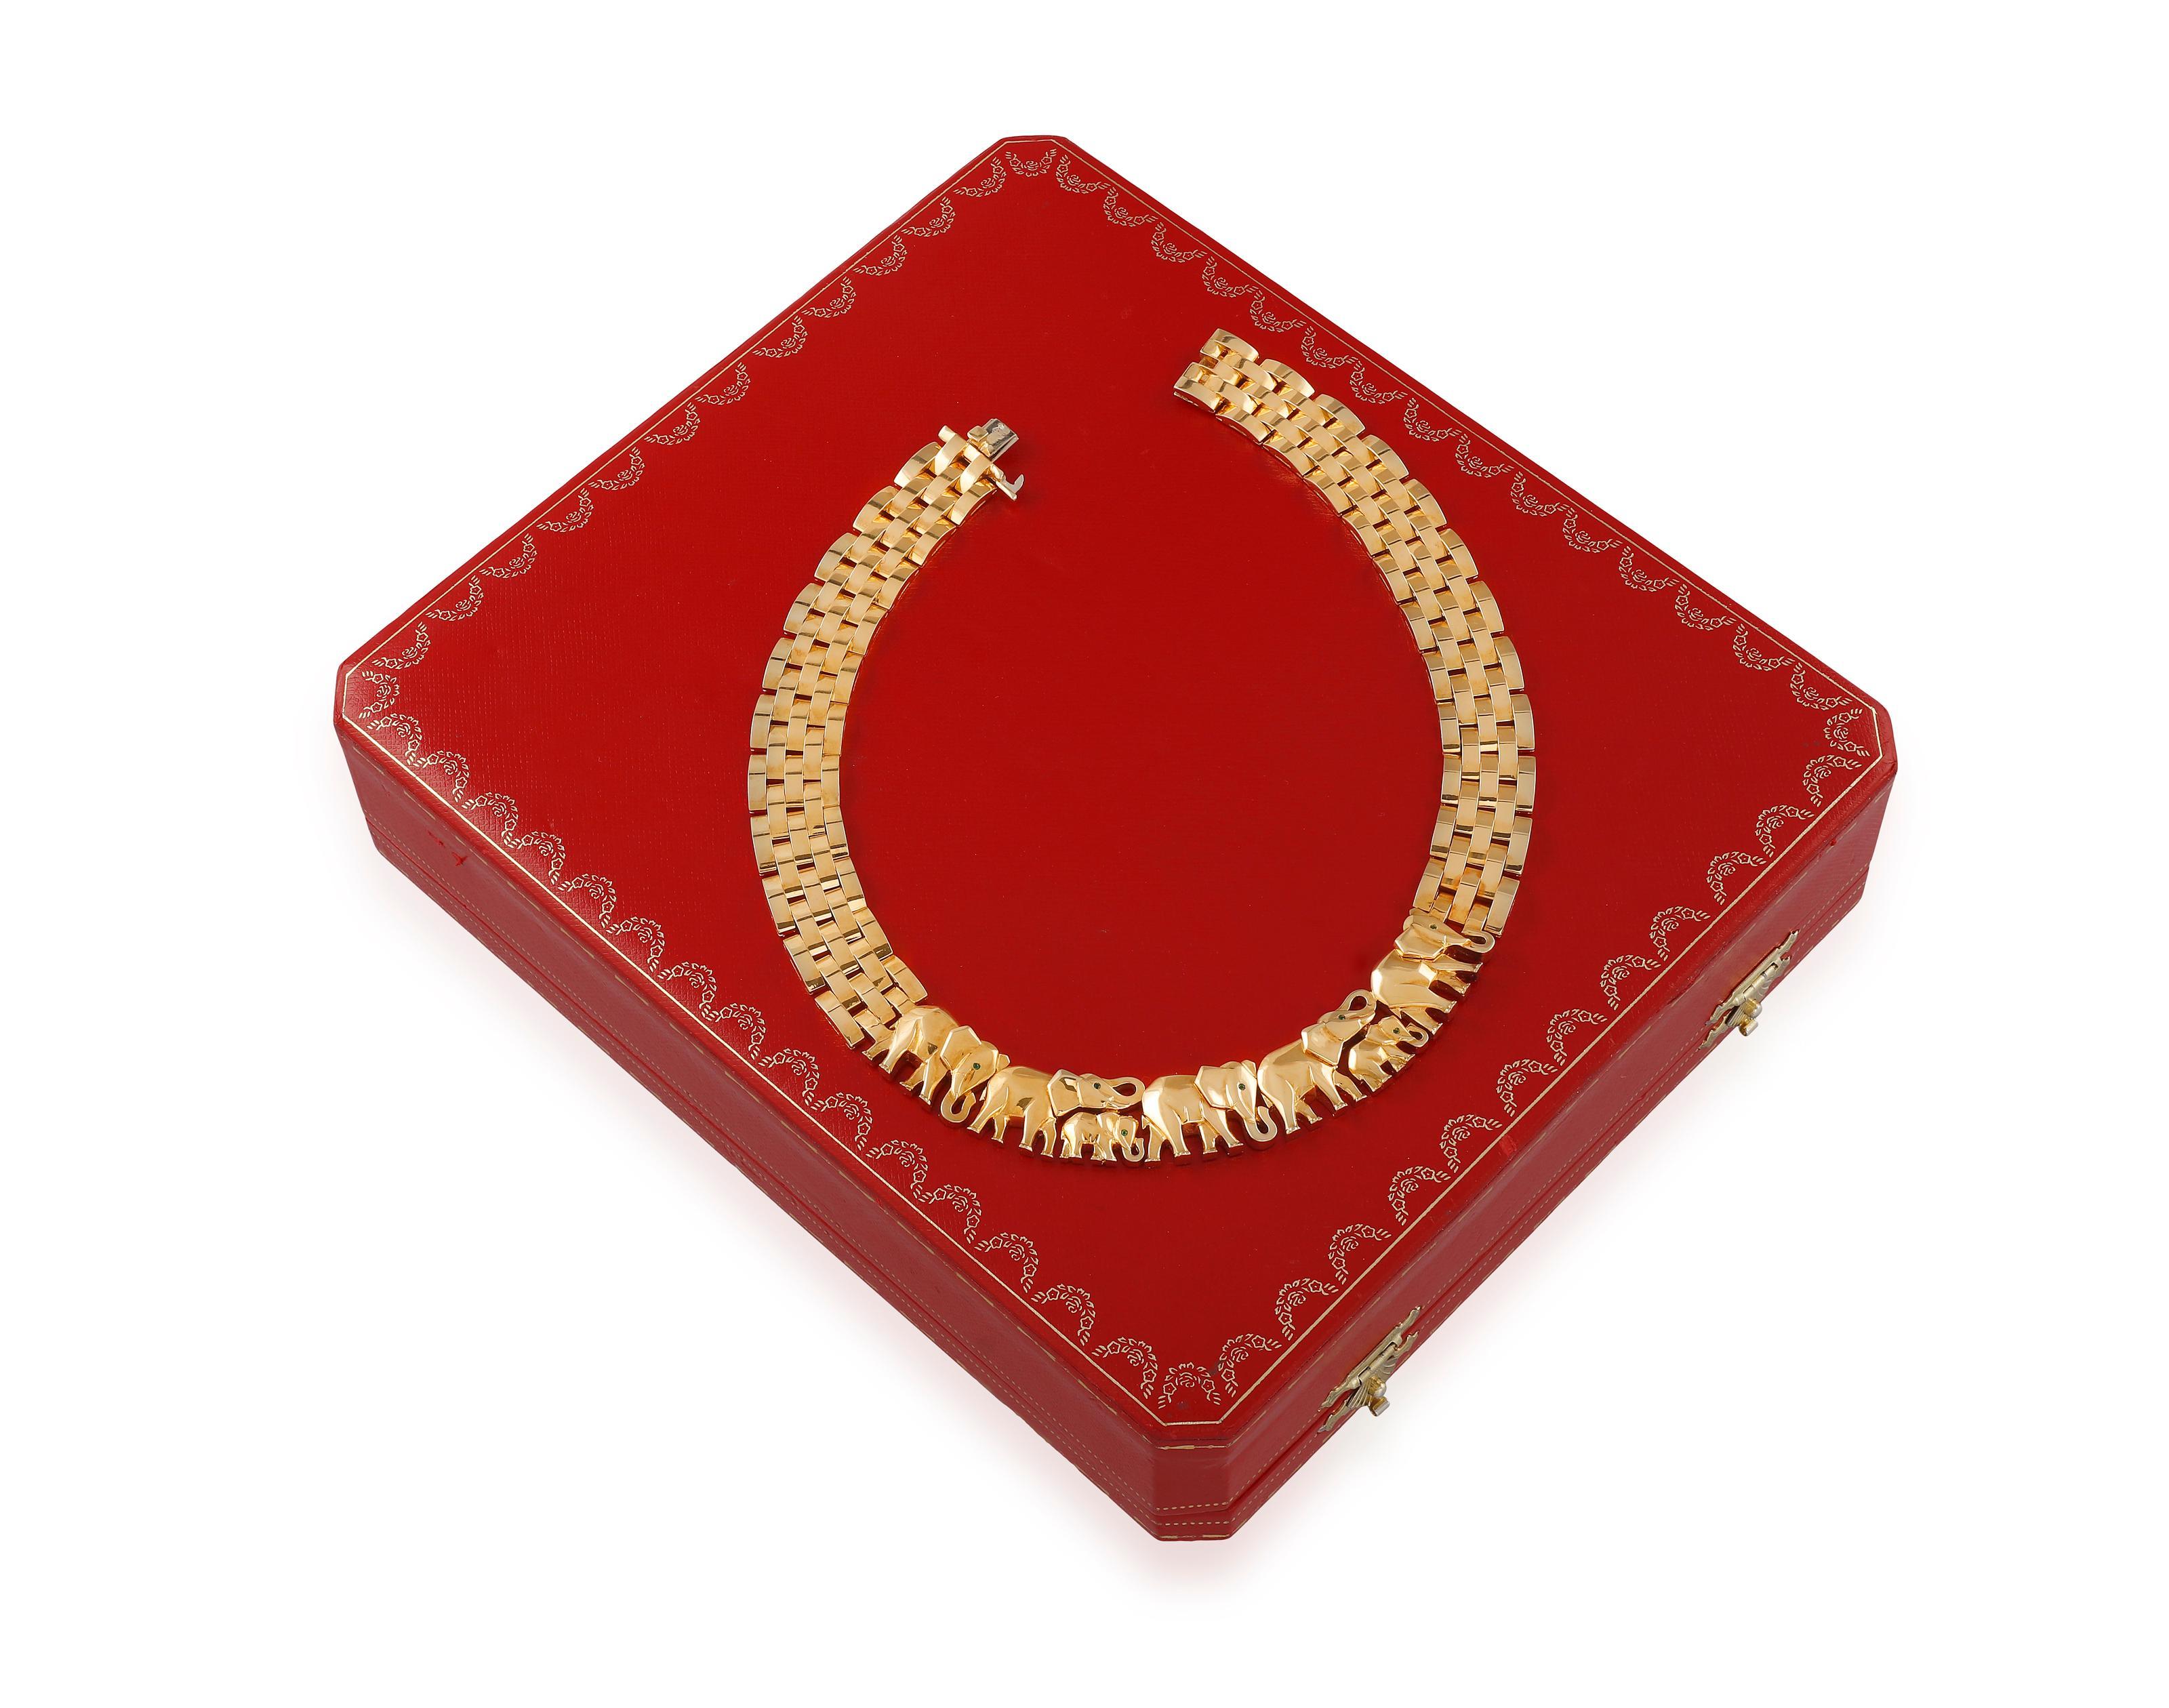 Cartier, collier maillon en or jaune 18 carats représentant un éléphant en marche 2